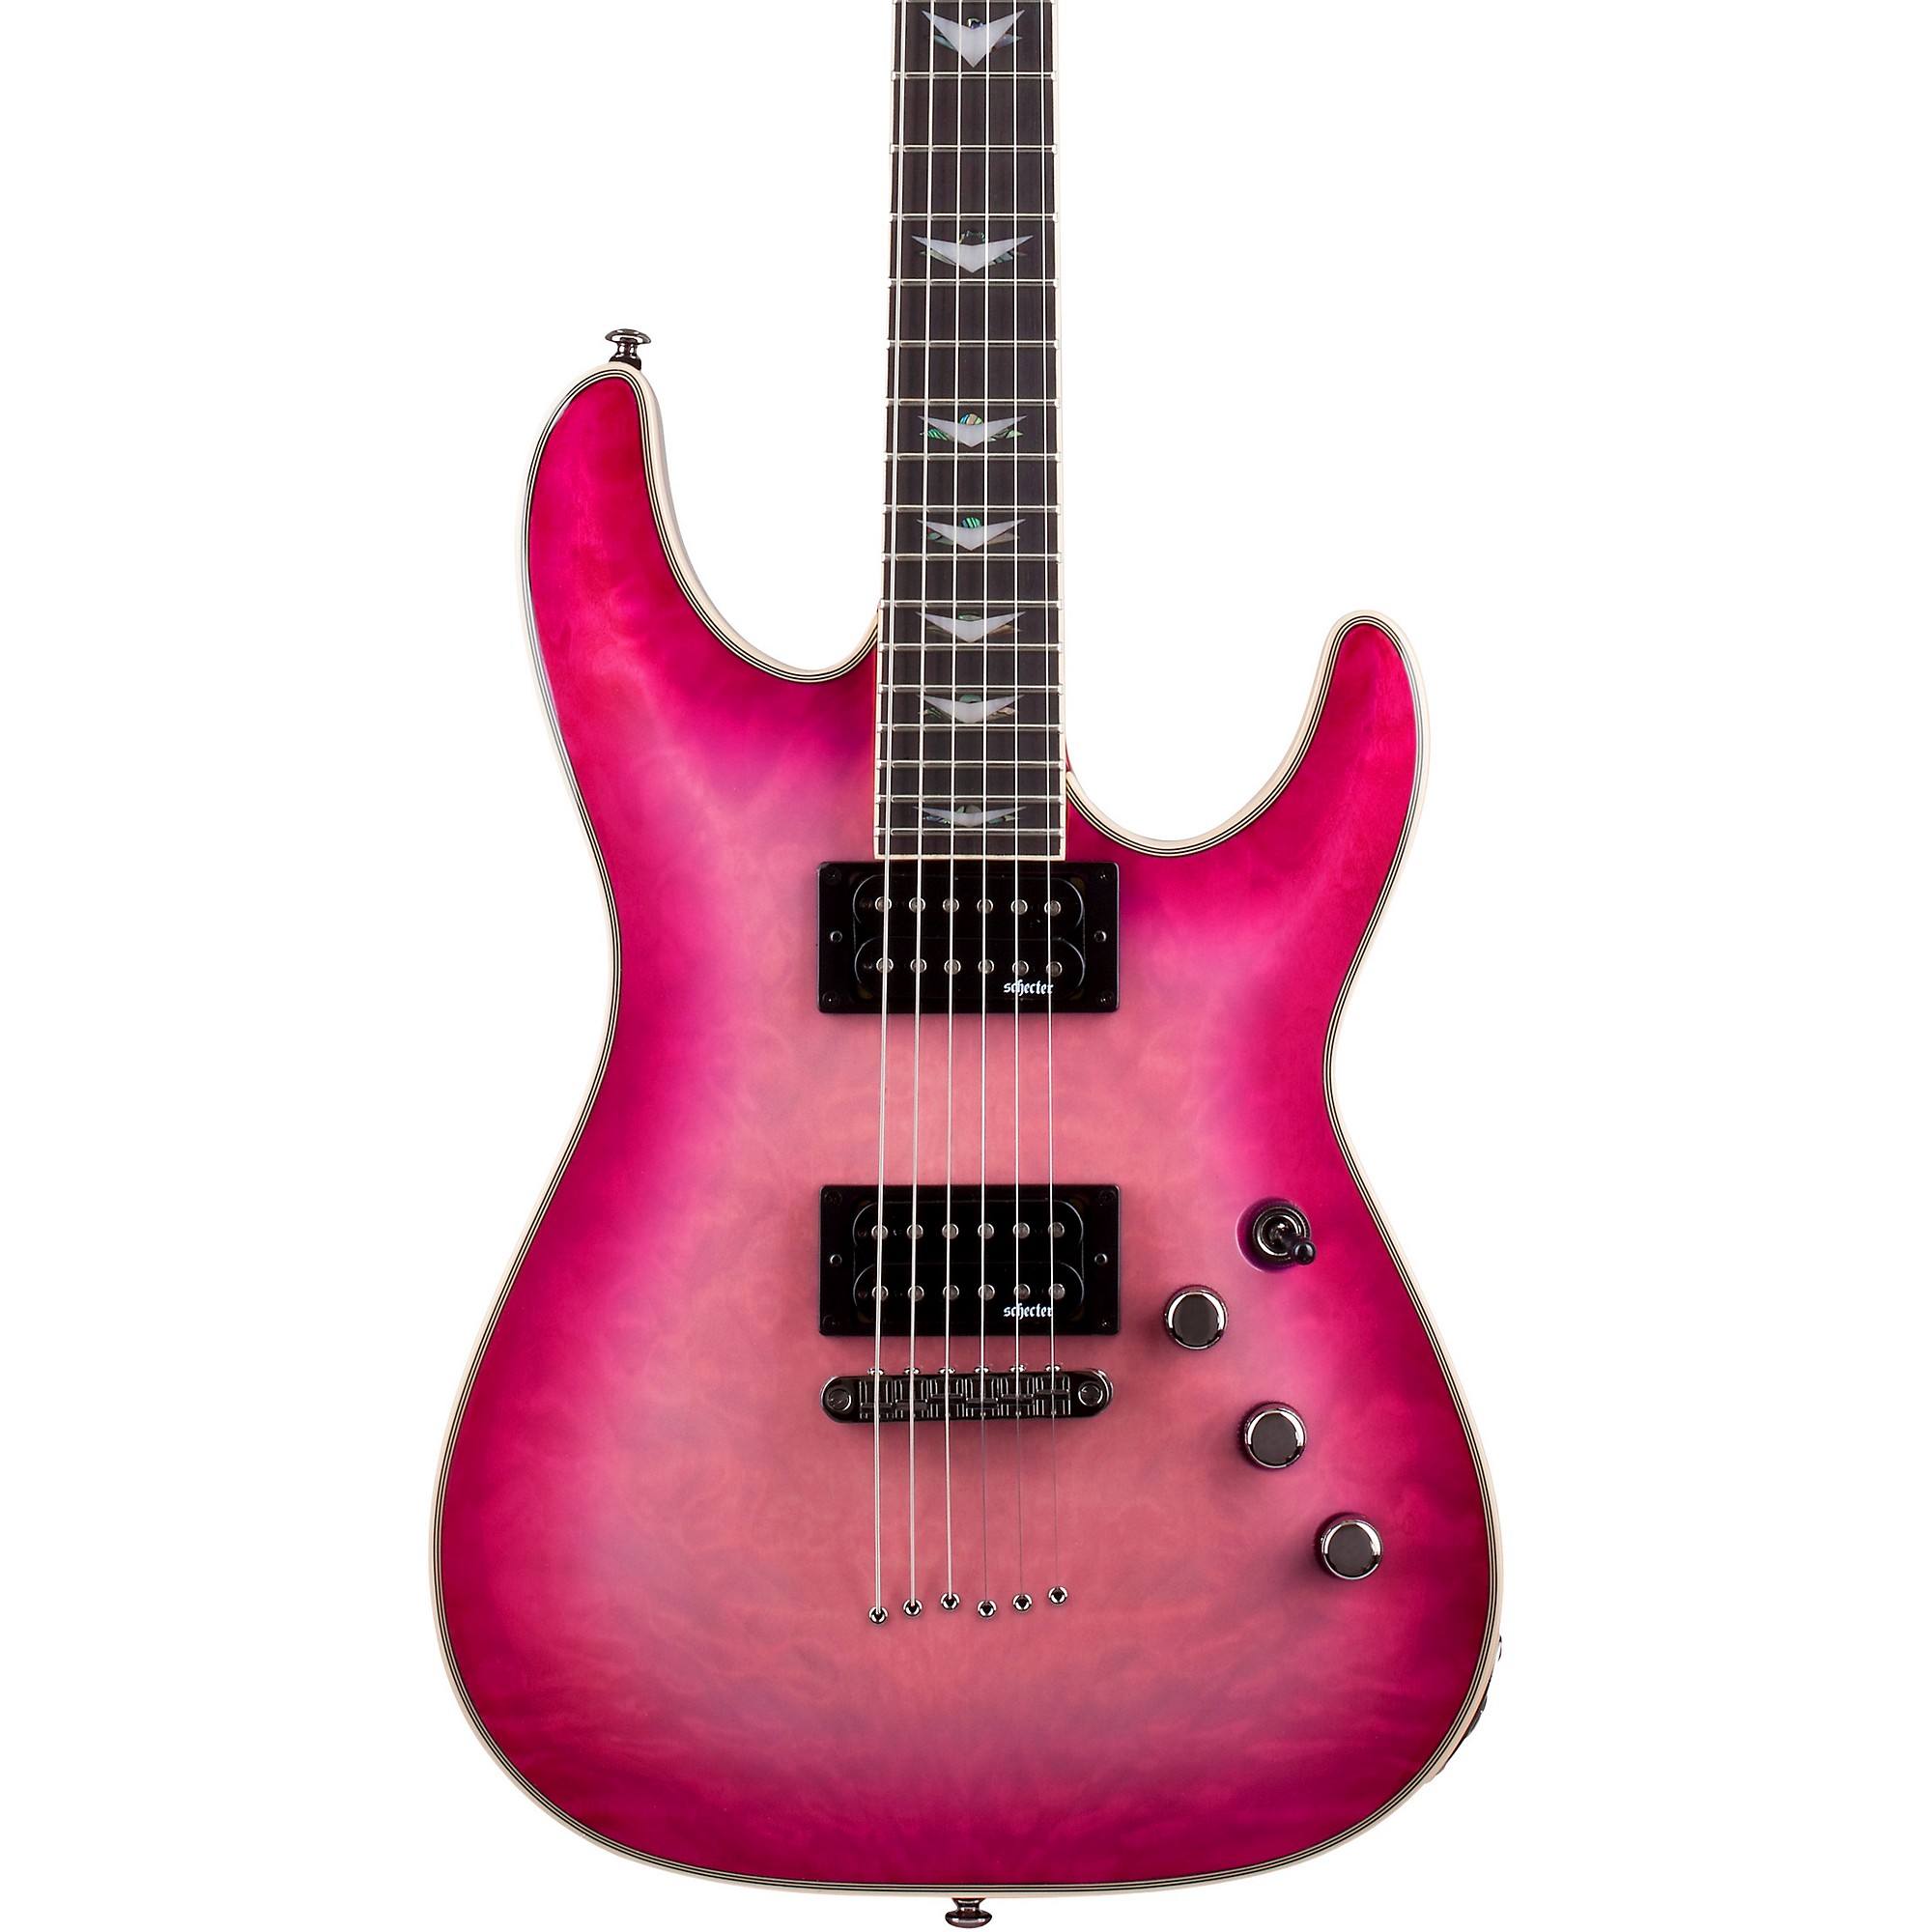 Schecter Guitar Research Trans Hot Pink Burst | Guitar Center